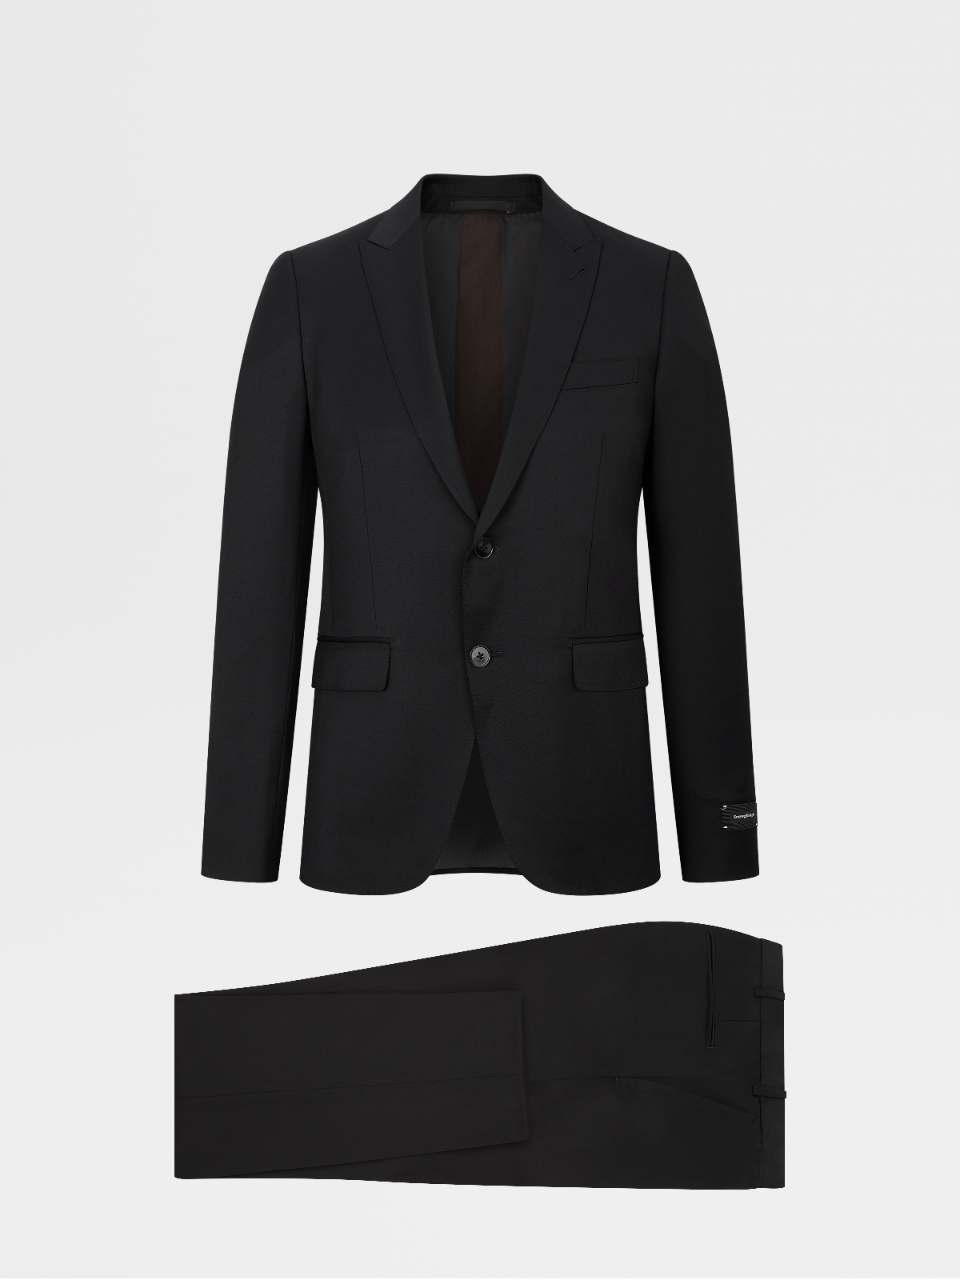 Black Multiseason Wool City Suit, Drop 9